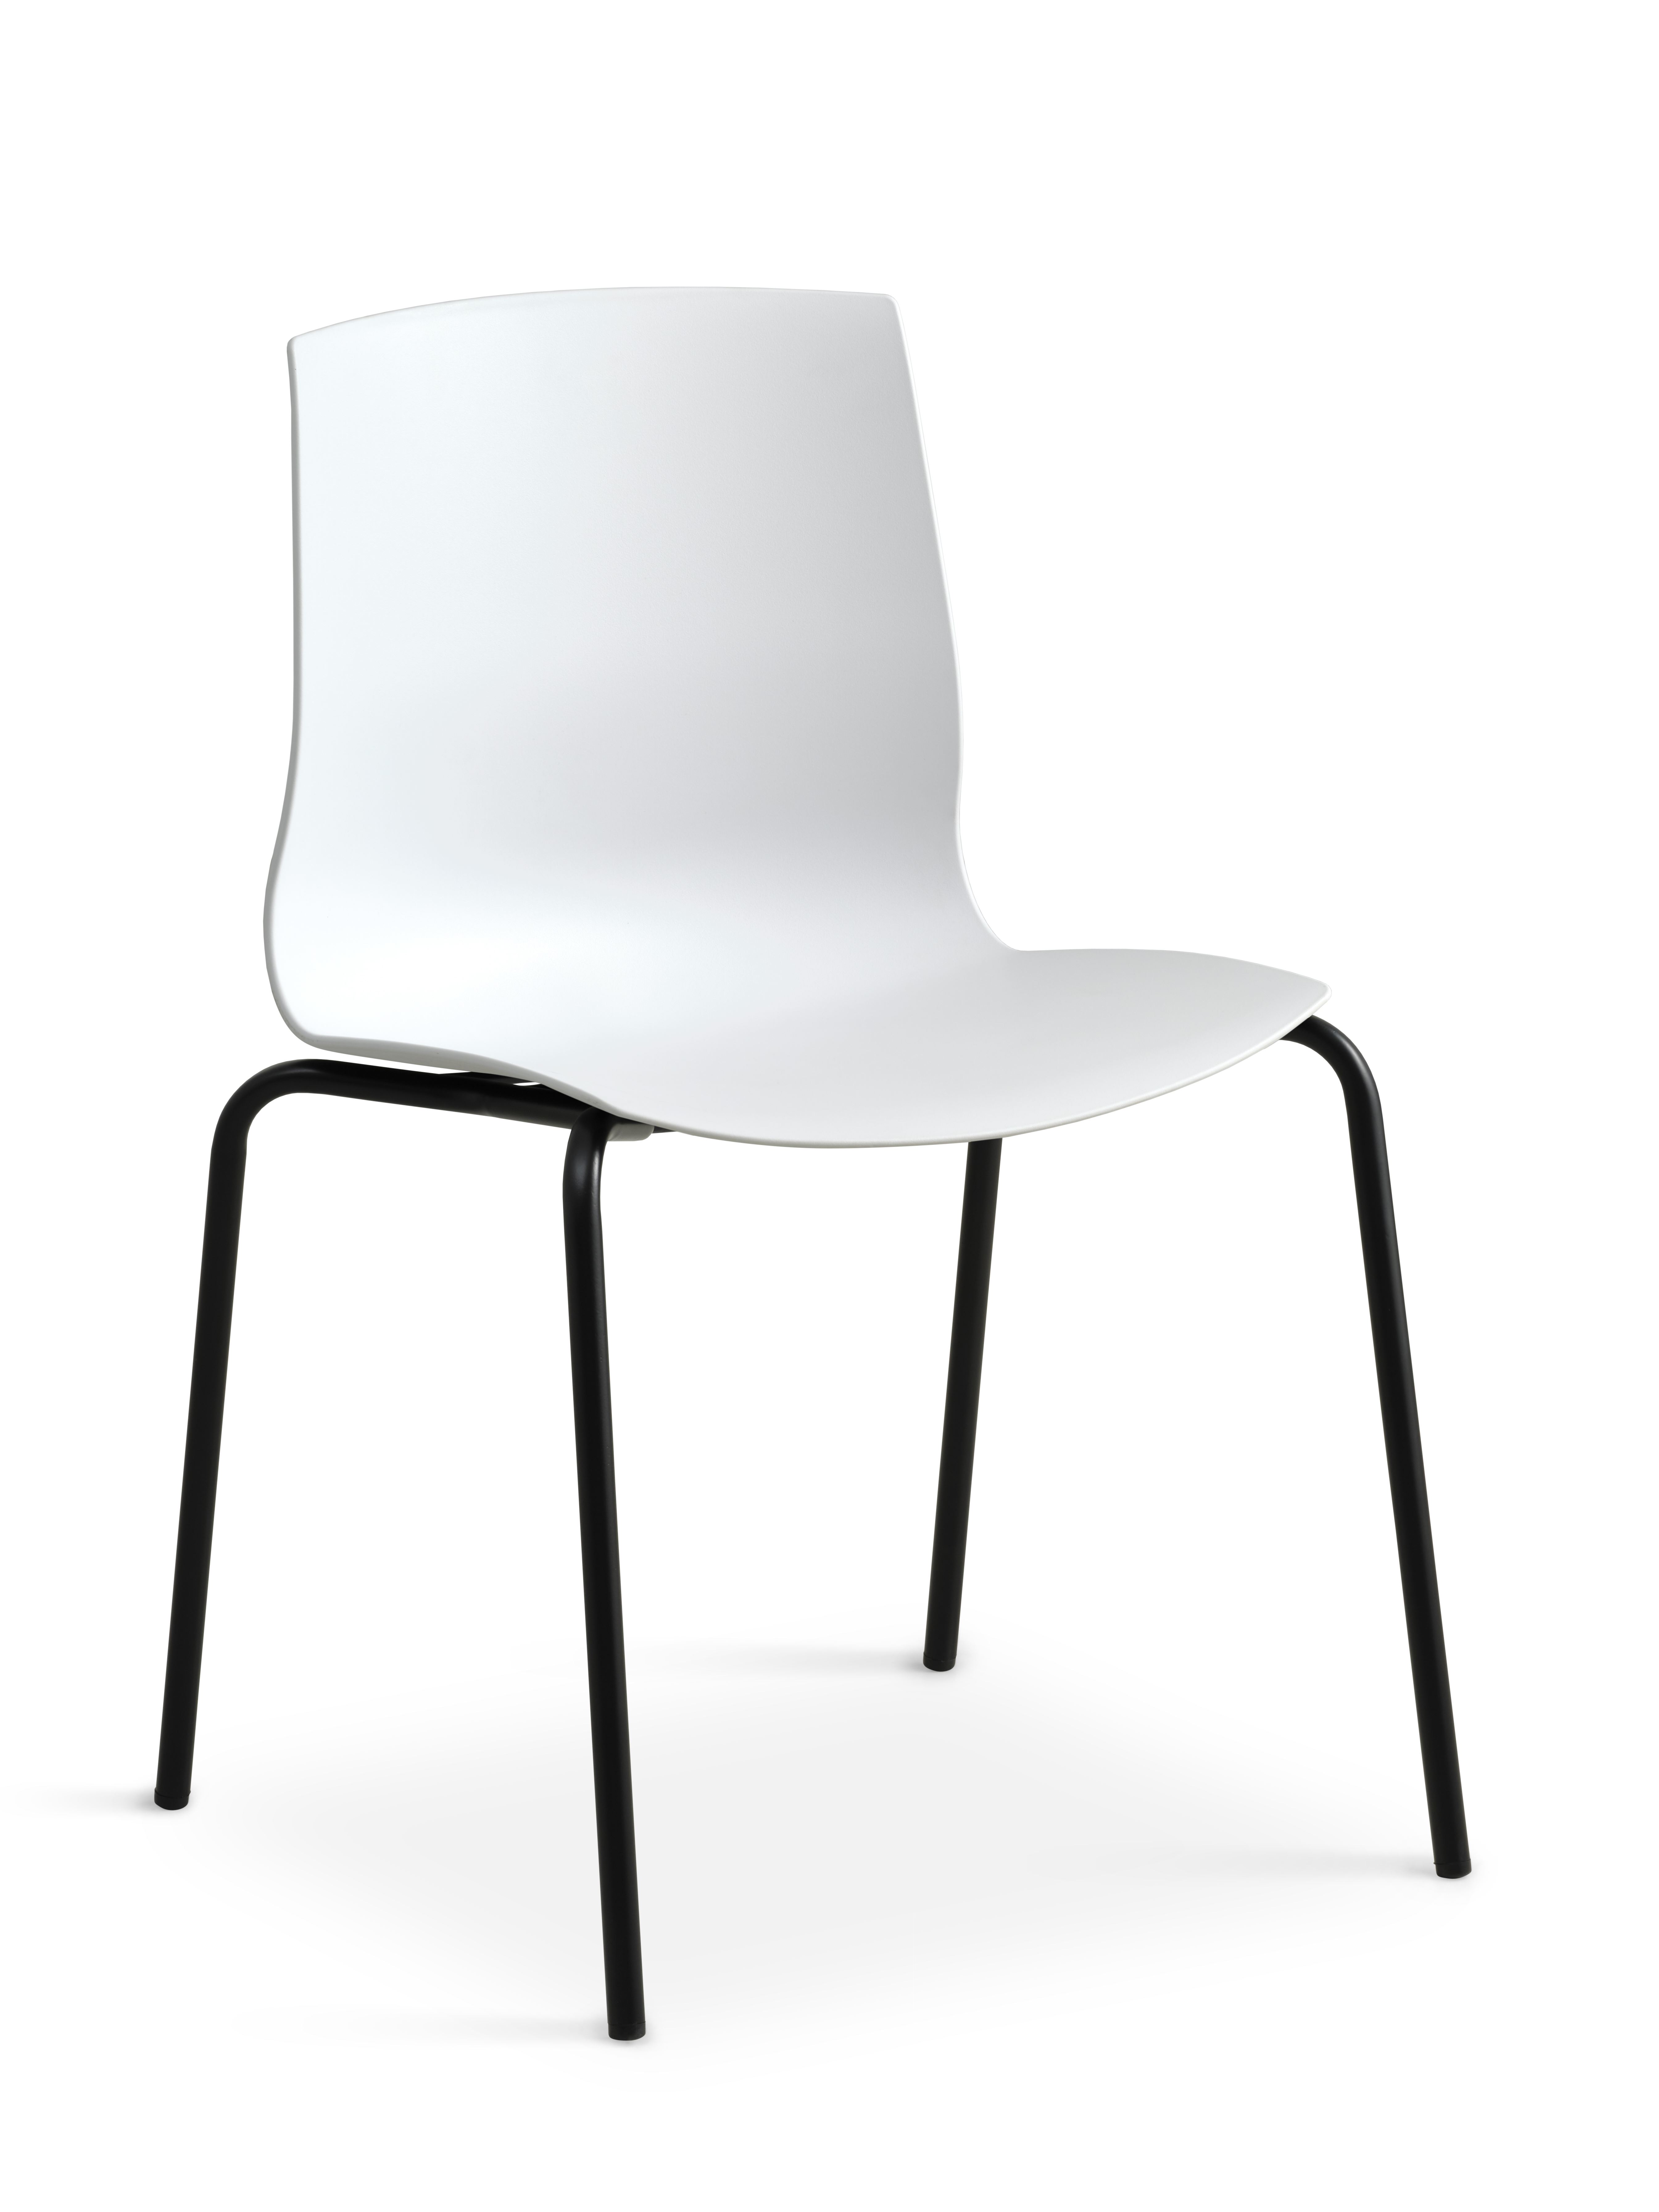 Liv spisebordsstol - hvid PVC og sort metal